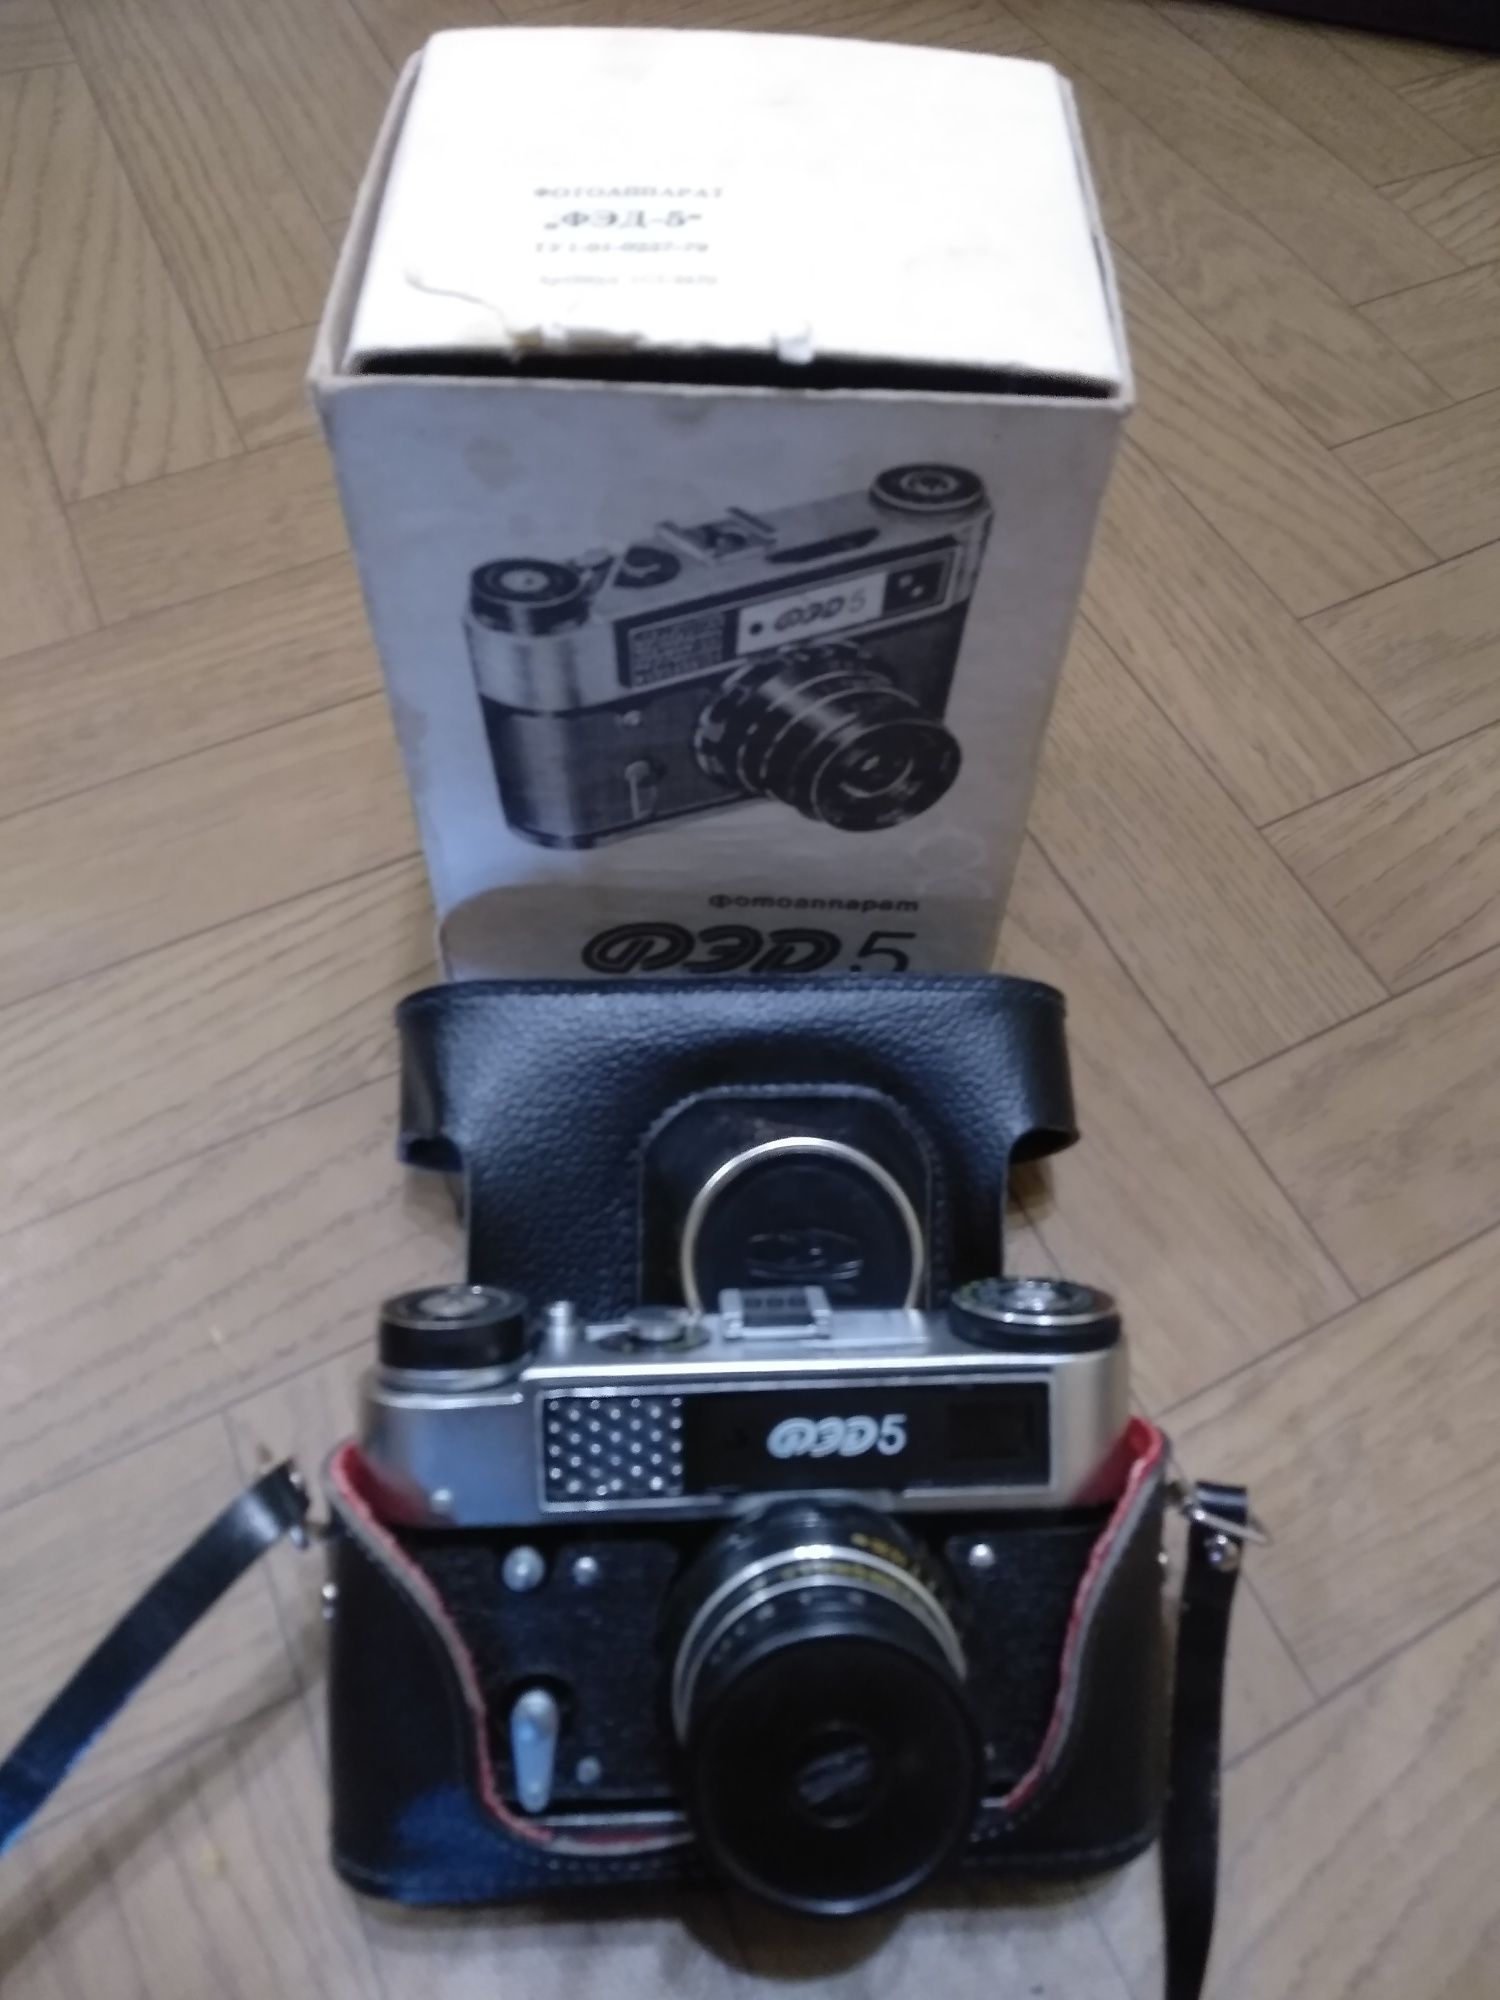 Фотоаппарат Фед 5 в использовании небыл.